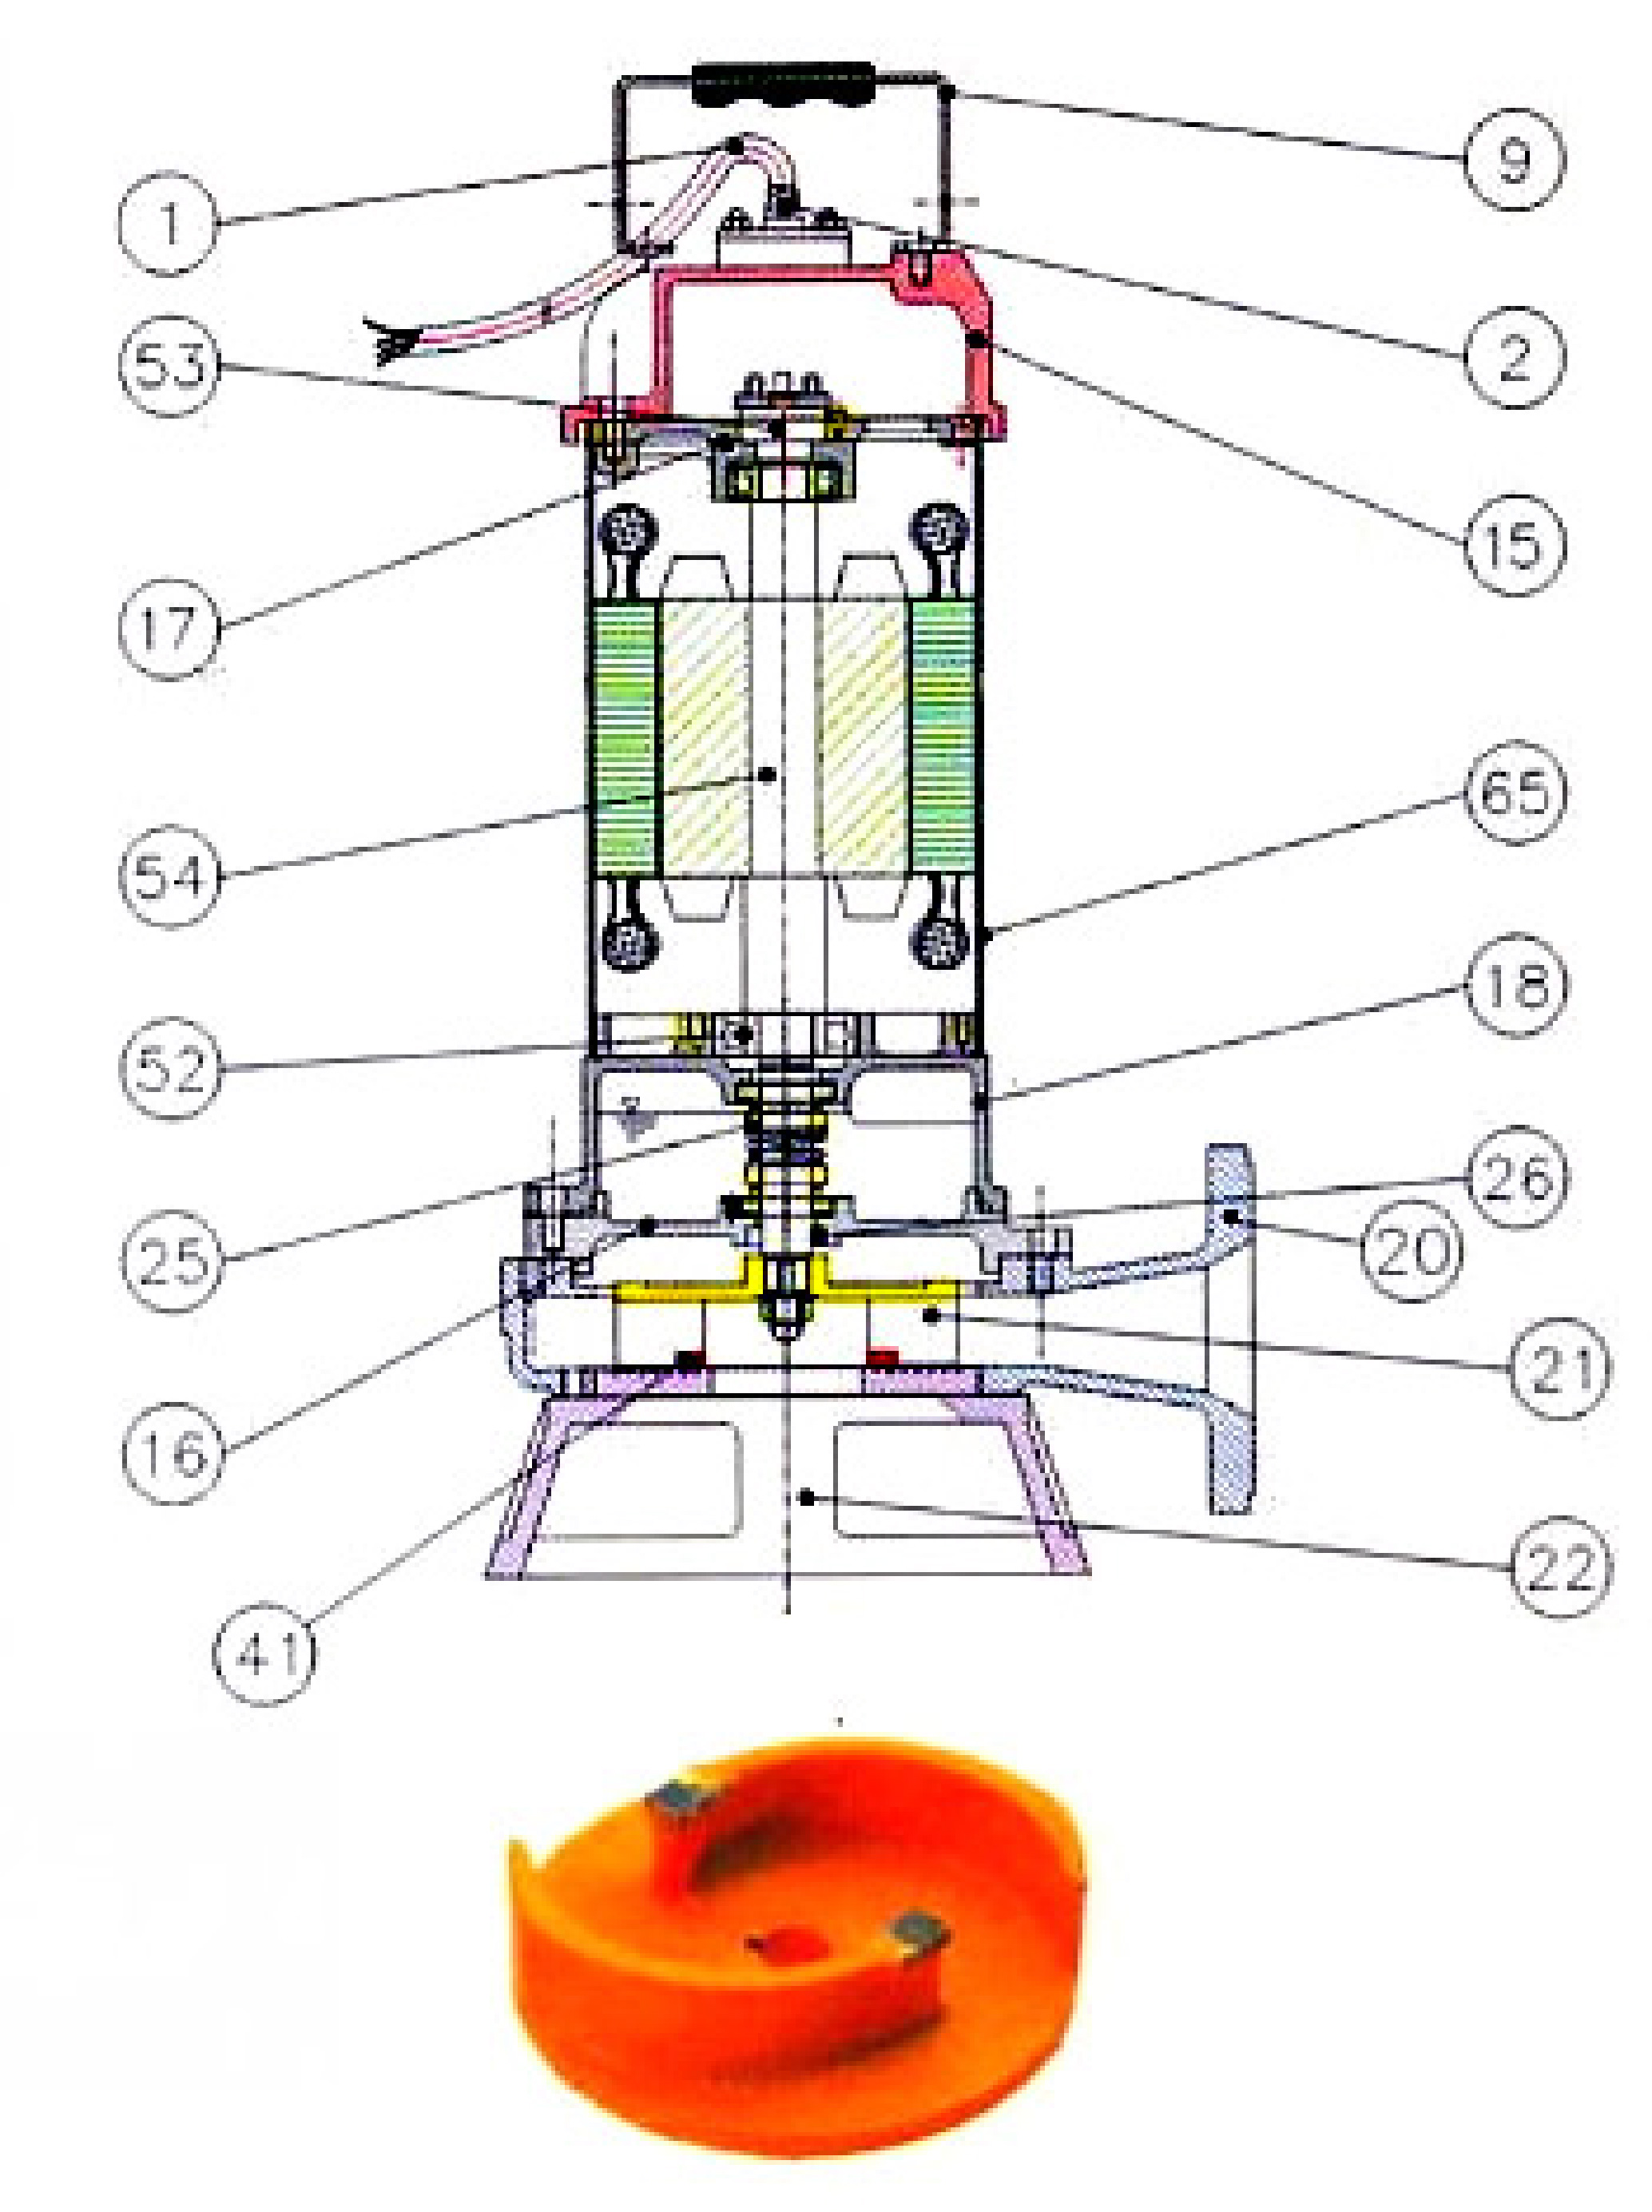 Podwodne pompy ściekowe z tnącym wirnikiem seria CE - Budowa